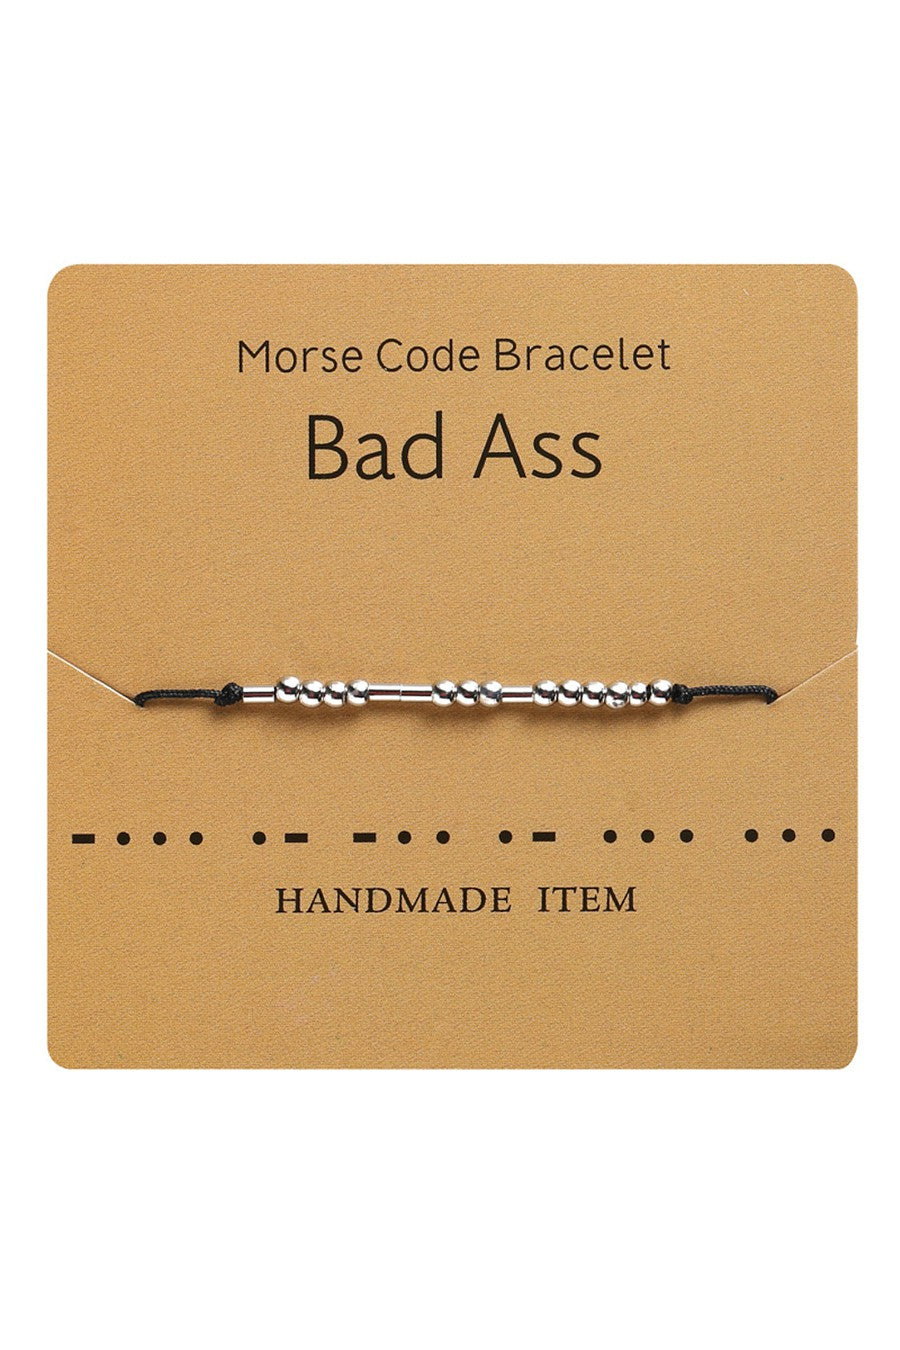 Morse Code Beaded Bracelet